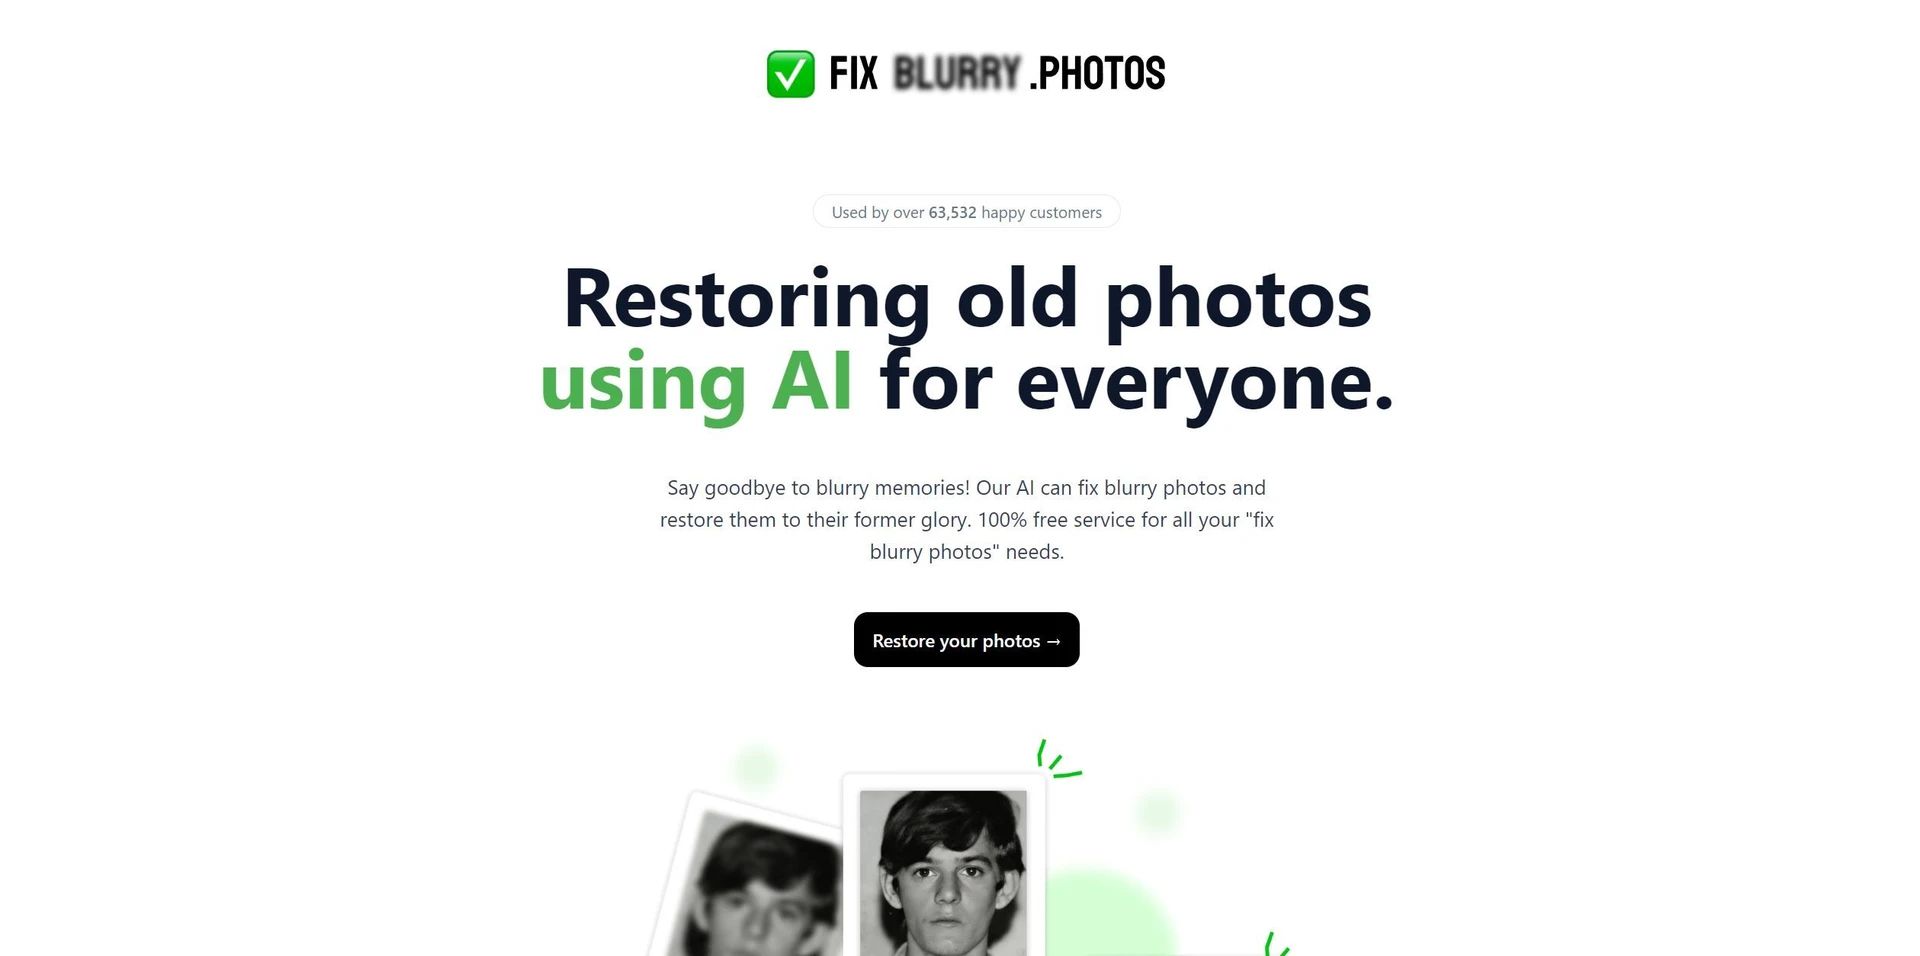 Fixblurry.photoswebsite picture